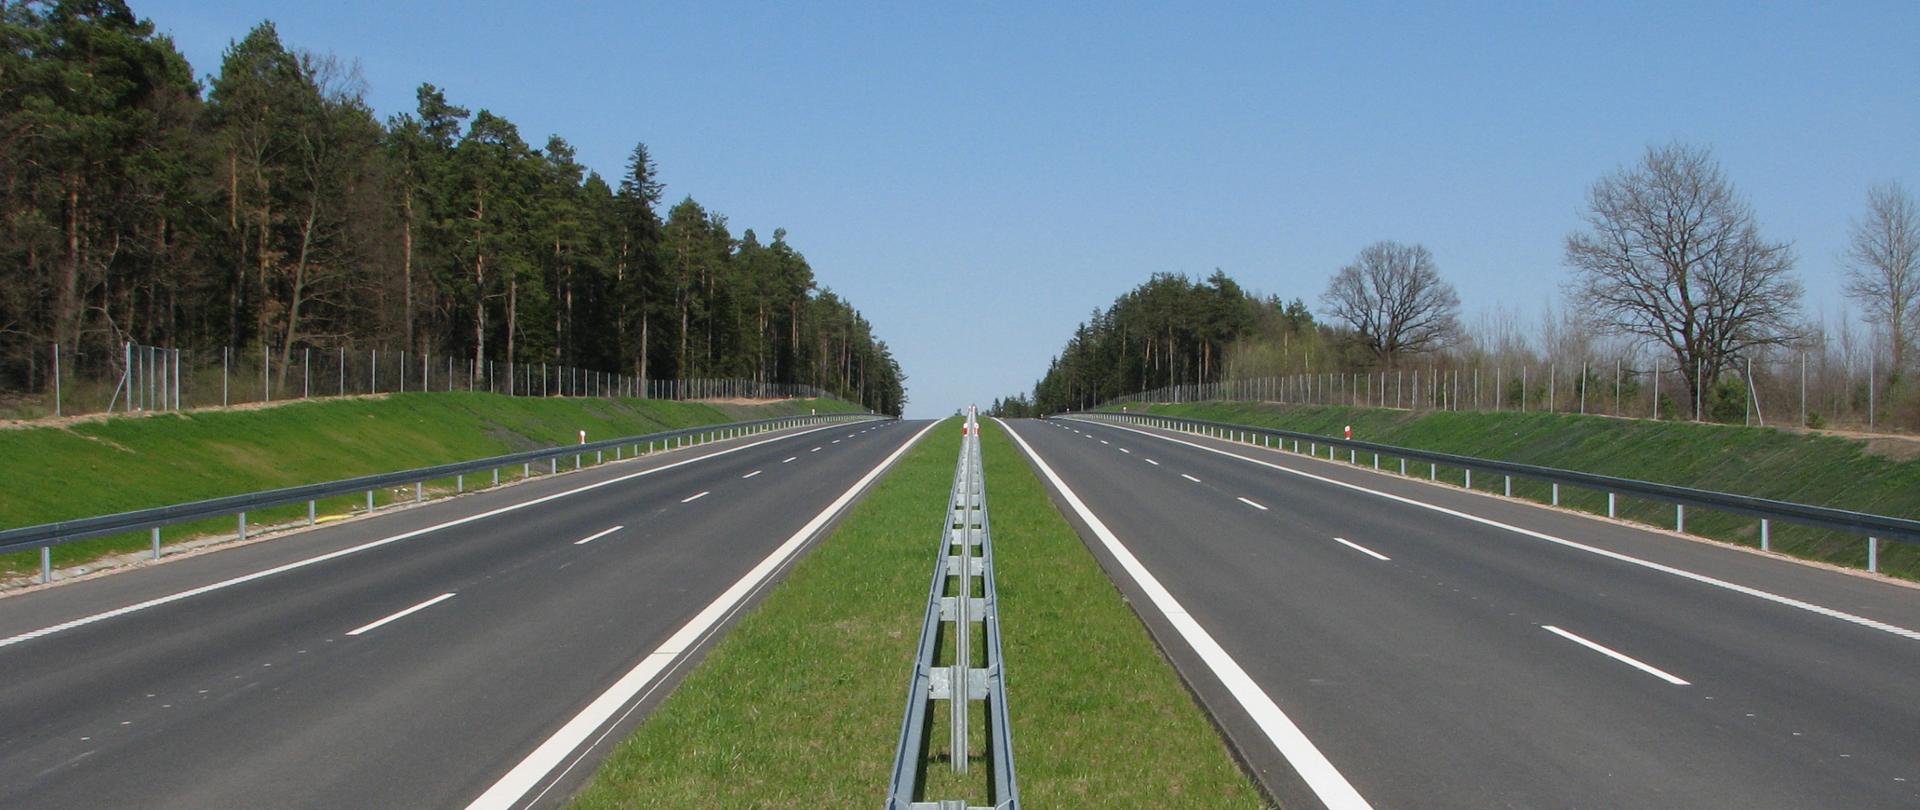 Droga ekspresowa - dwie jezdnie przedzielone pasem zieleni i barierą, przy drodze za ogrodzeniem las